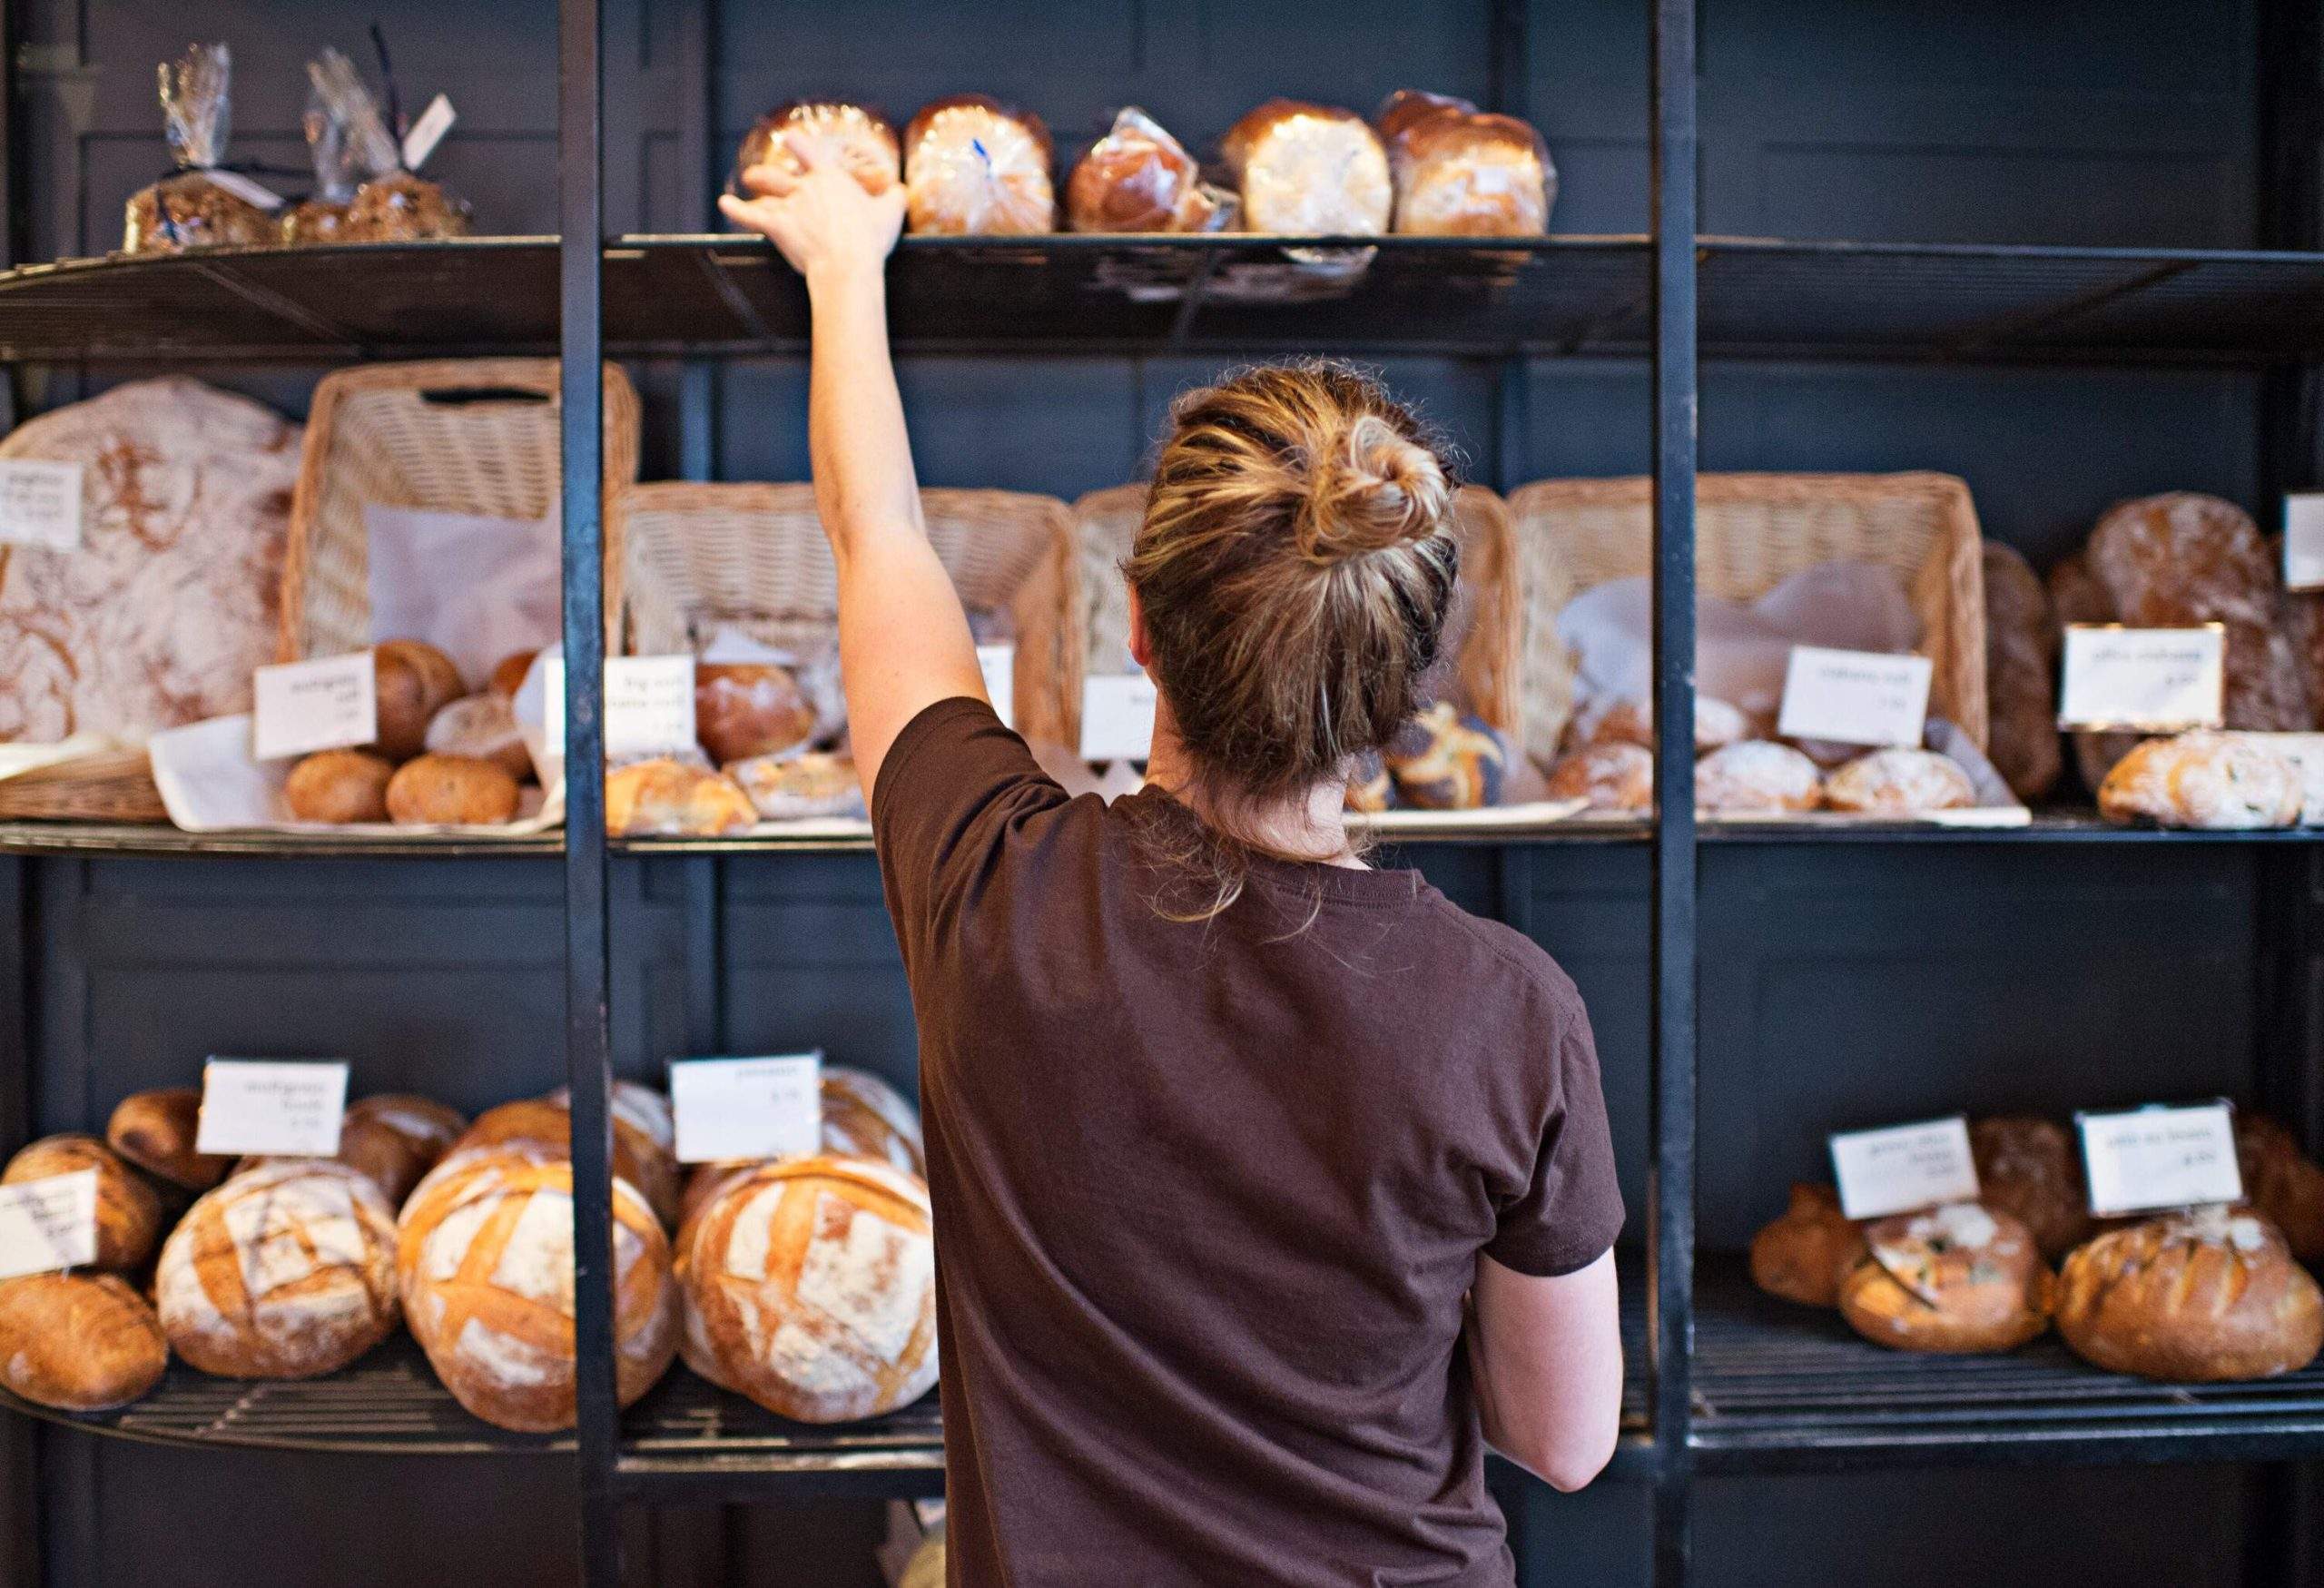 Une femme remplit les étagères avec des miches de pain fraîchement cuites.